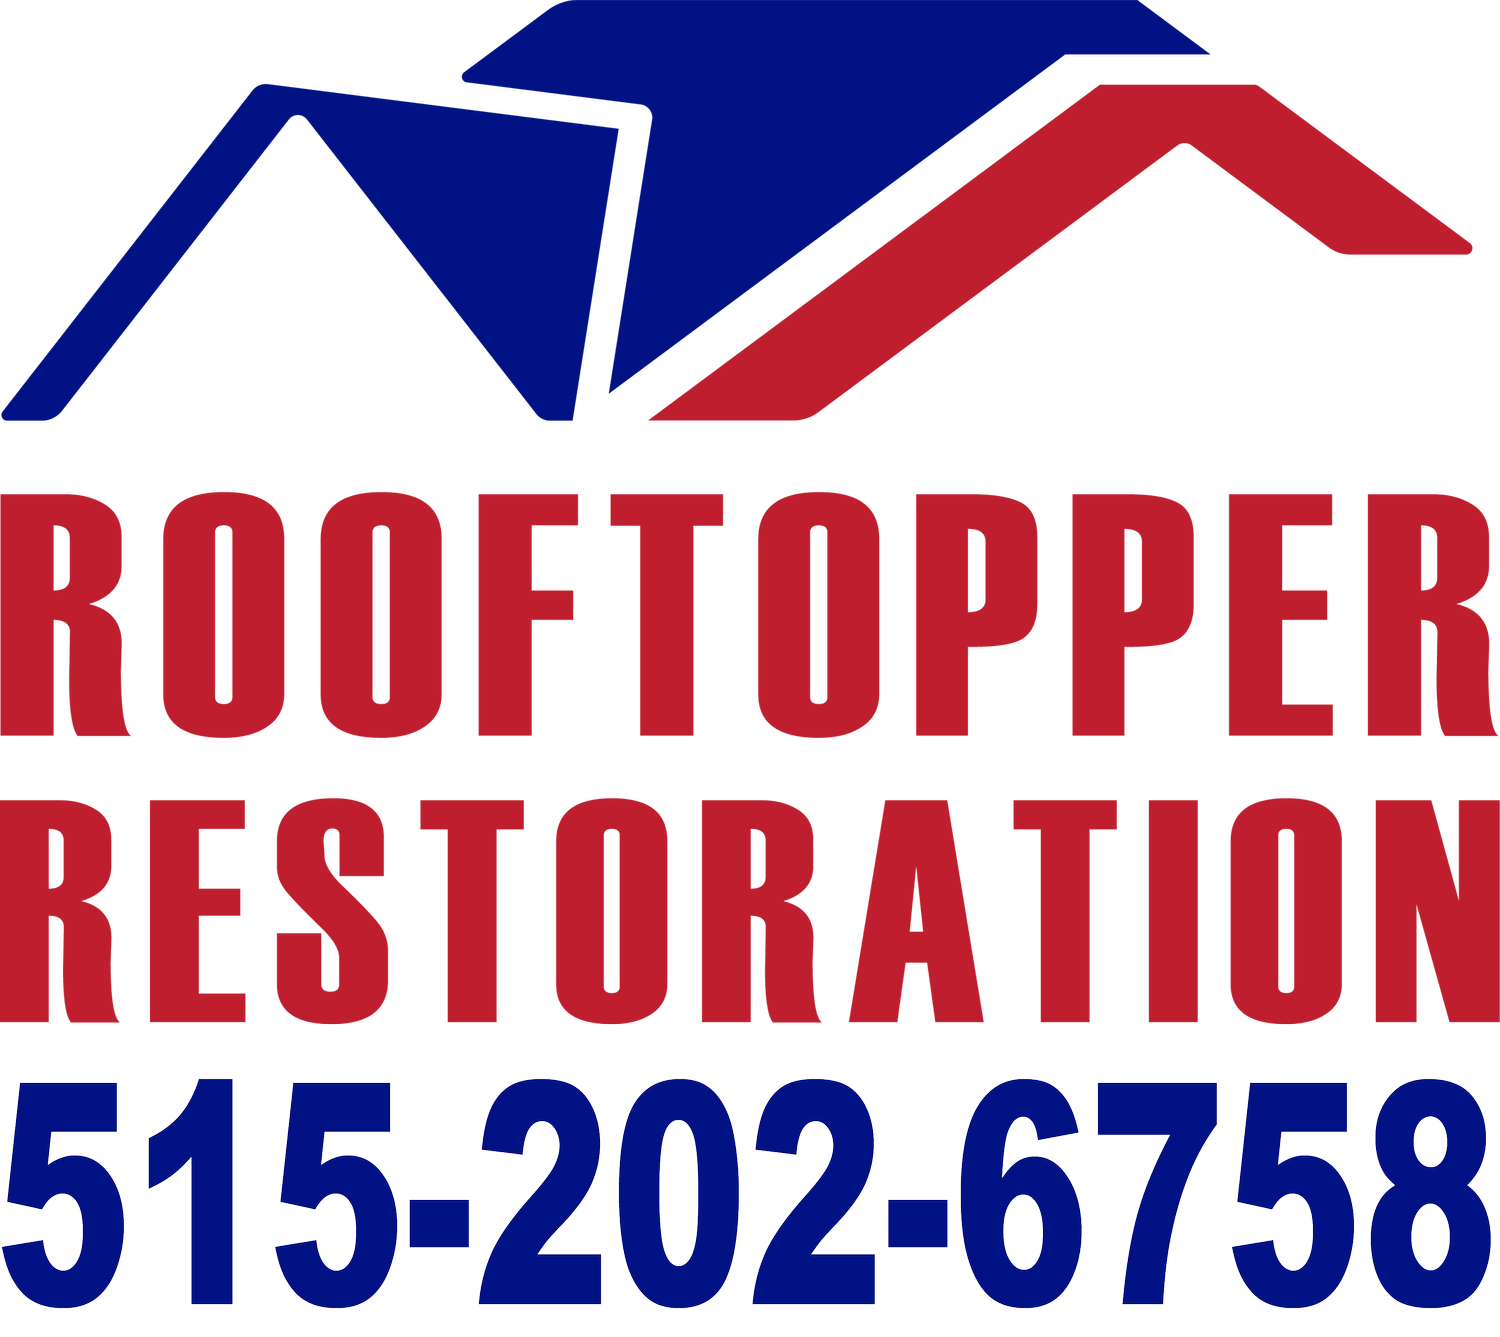 Rooftopper Restoration